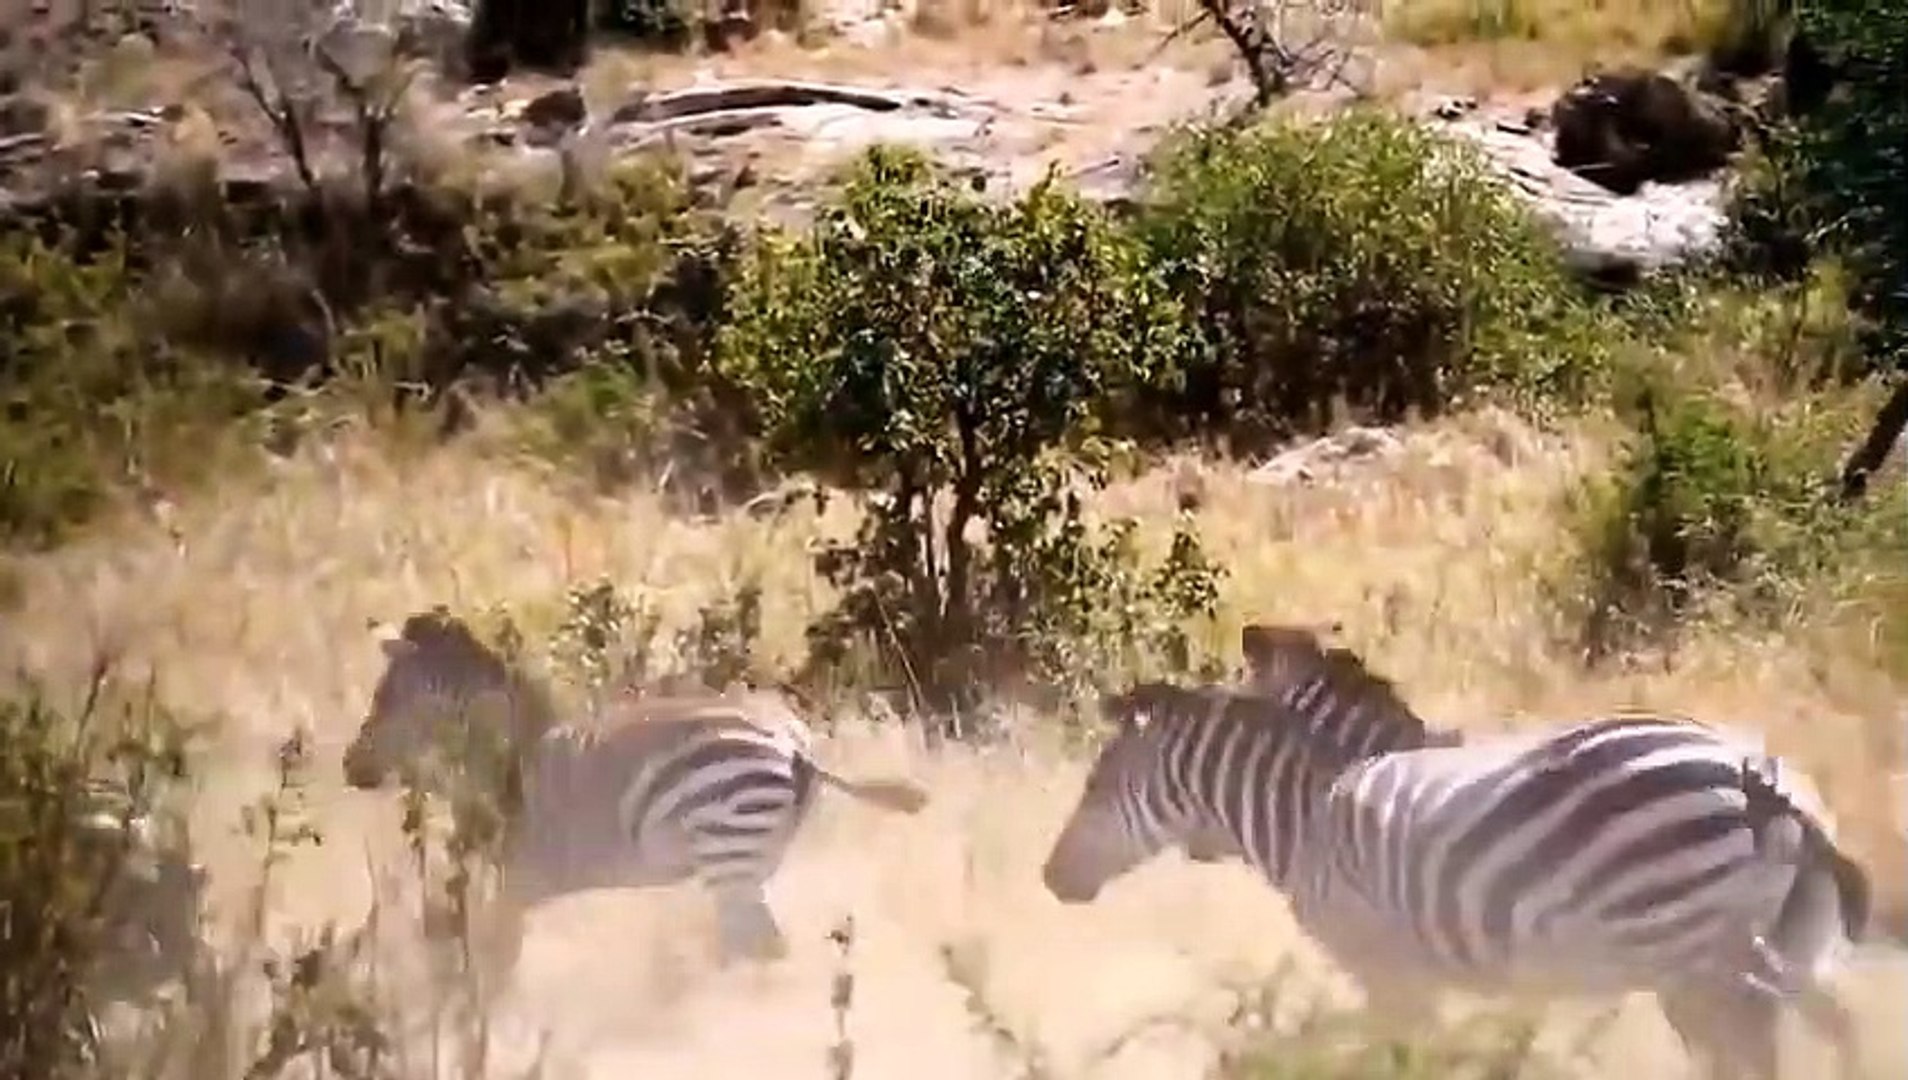 Top 5 Wilderness Battles Antelope vs Jaguar, Lion vs Zebra, Buffalo, Wildebeest, Elephant Vs Hyenas